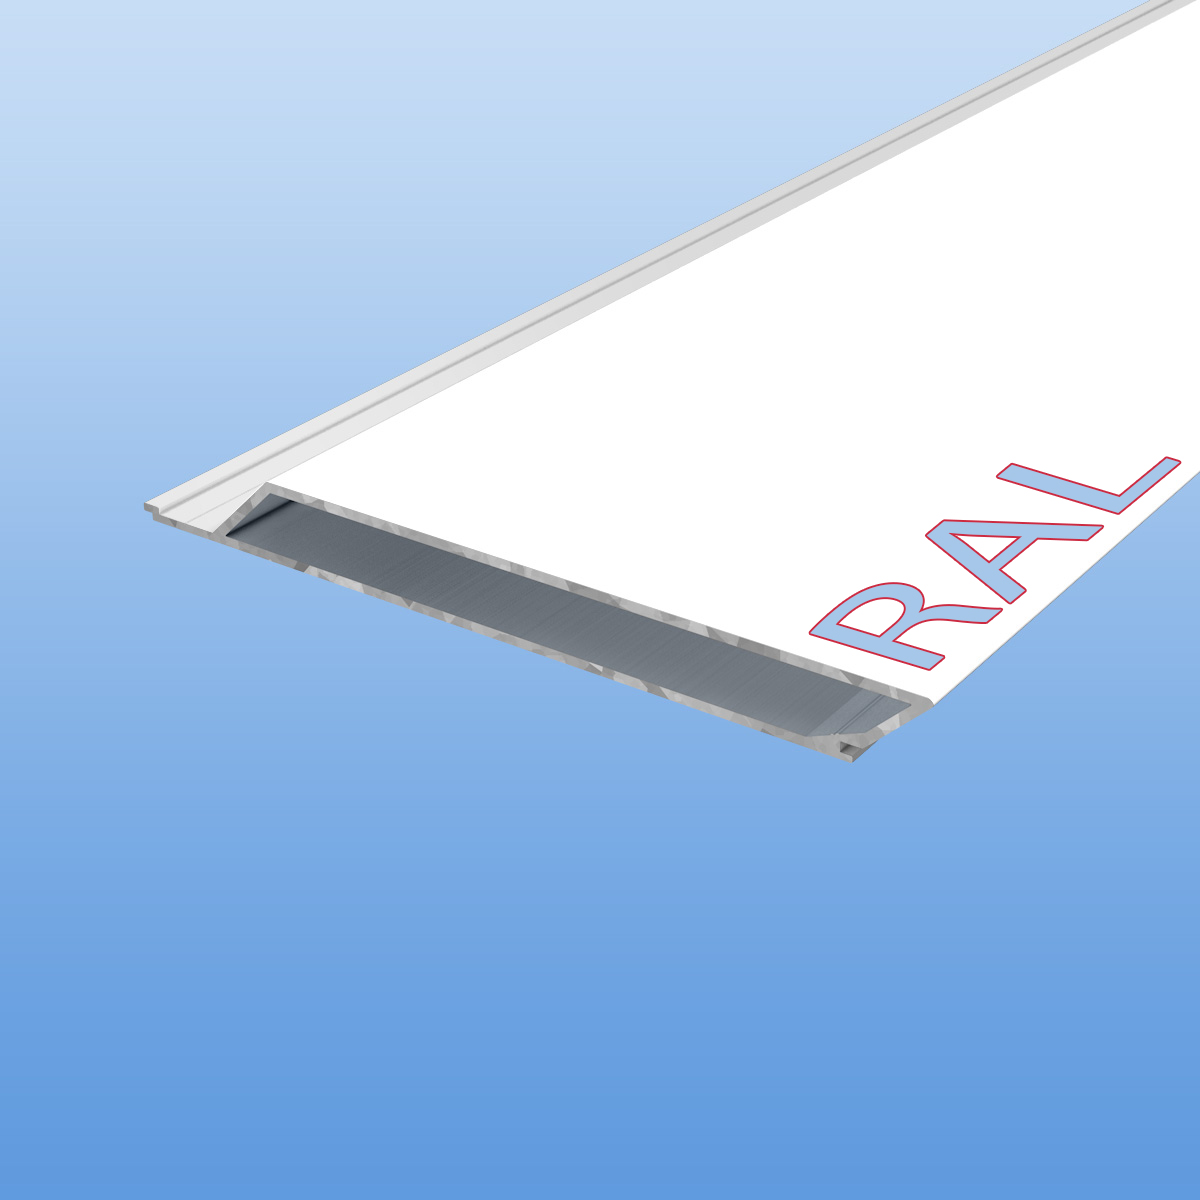 Rhombusprofil aus Aluminium 16mm mit Montagesteg nach RAL - Weißtöne - Sichtfläche 134mm